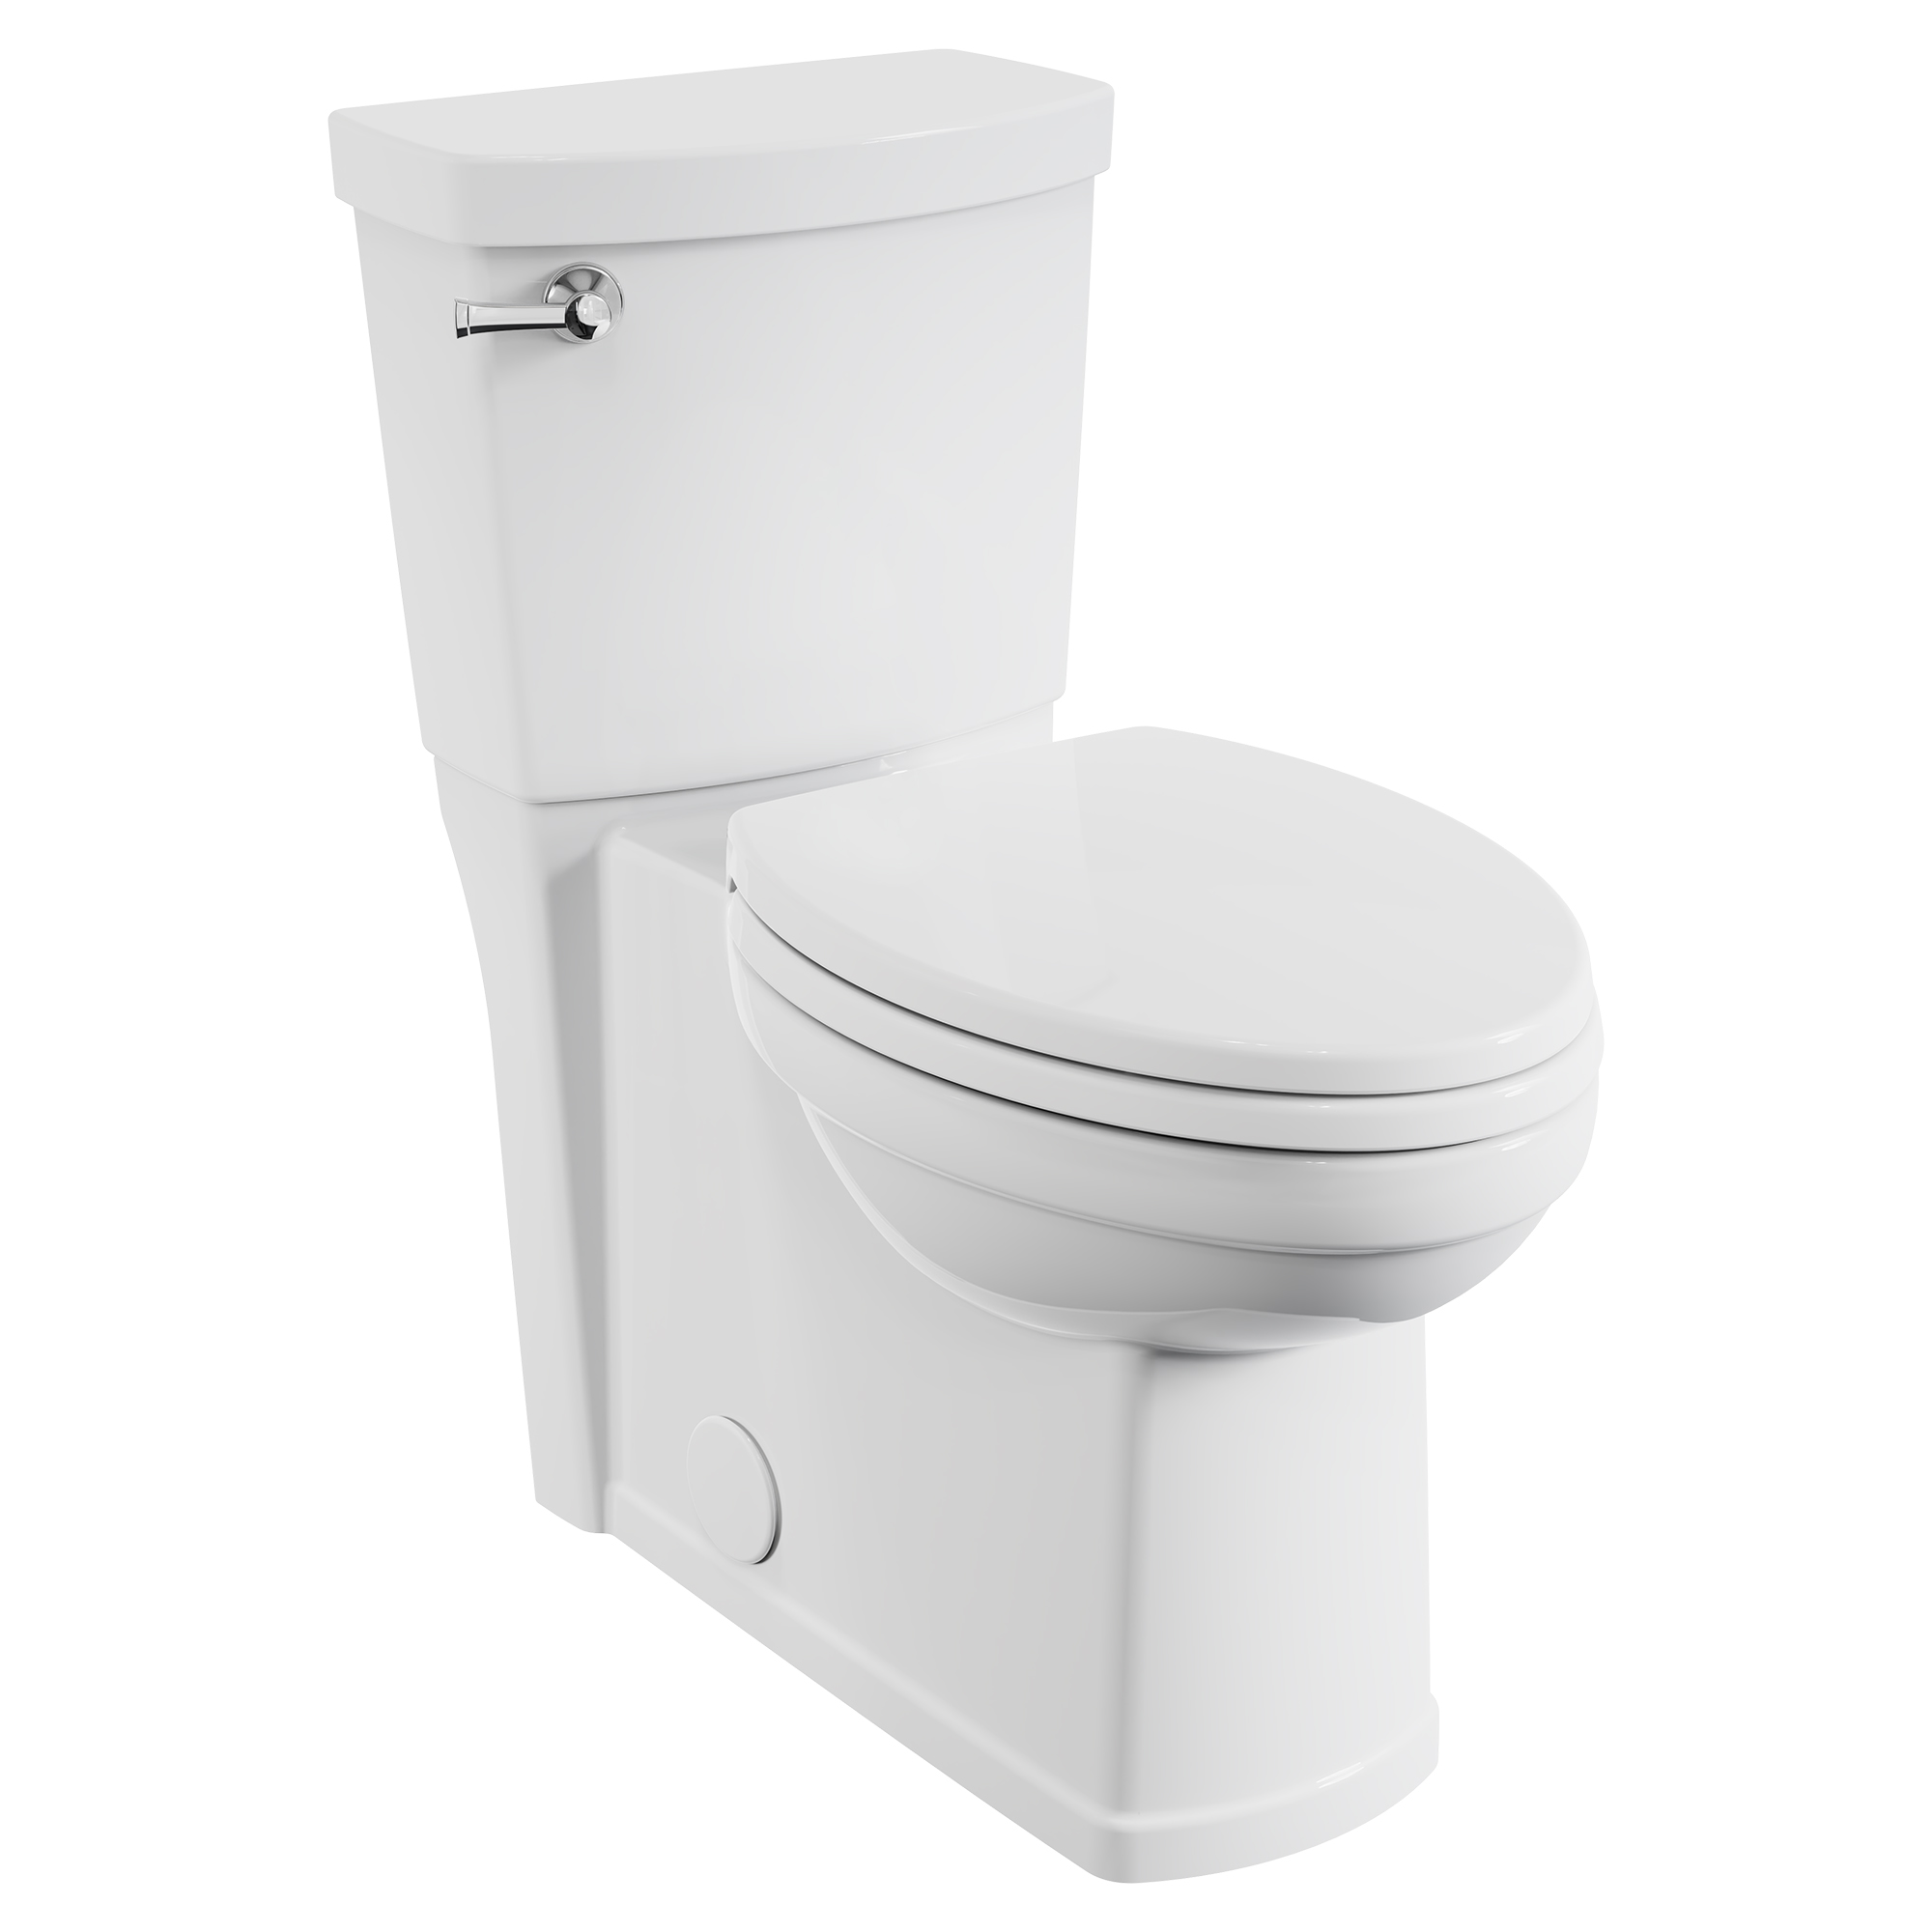 Toilette à jupe EstateMC, deux pièces, 1,28 gpc/4,8 Lpc, hauteur de chaise, avec siège allongé